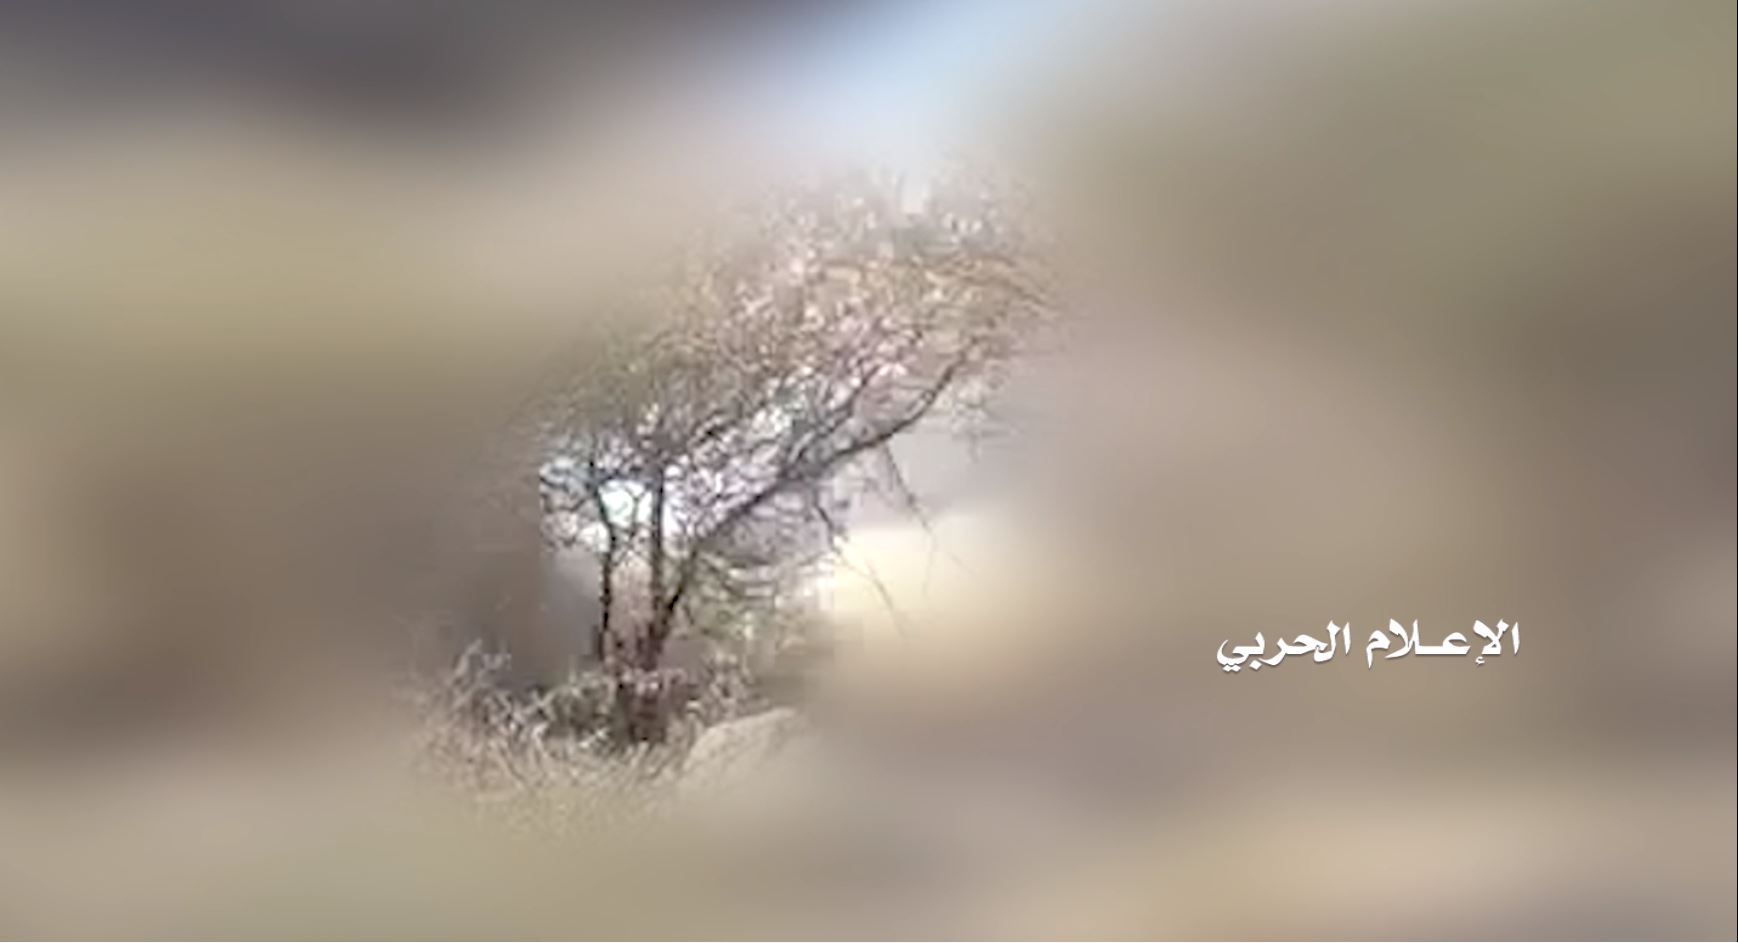 نهم – إطلاق صاروخ زلزال2 واستهداف مدفعي على متارس المنافقين في حريب نهم والمجاوحة